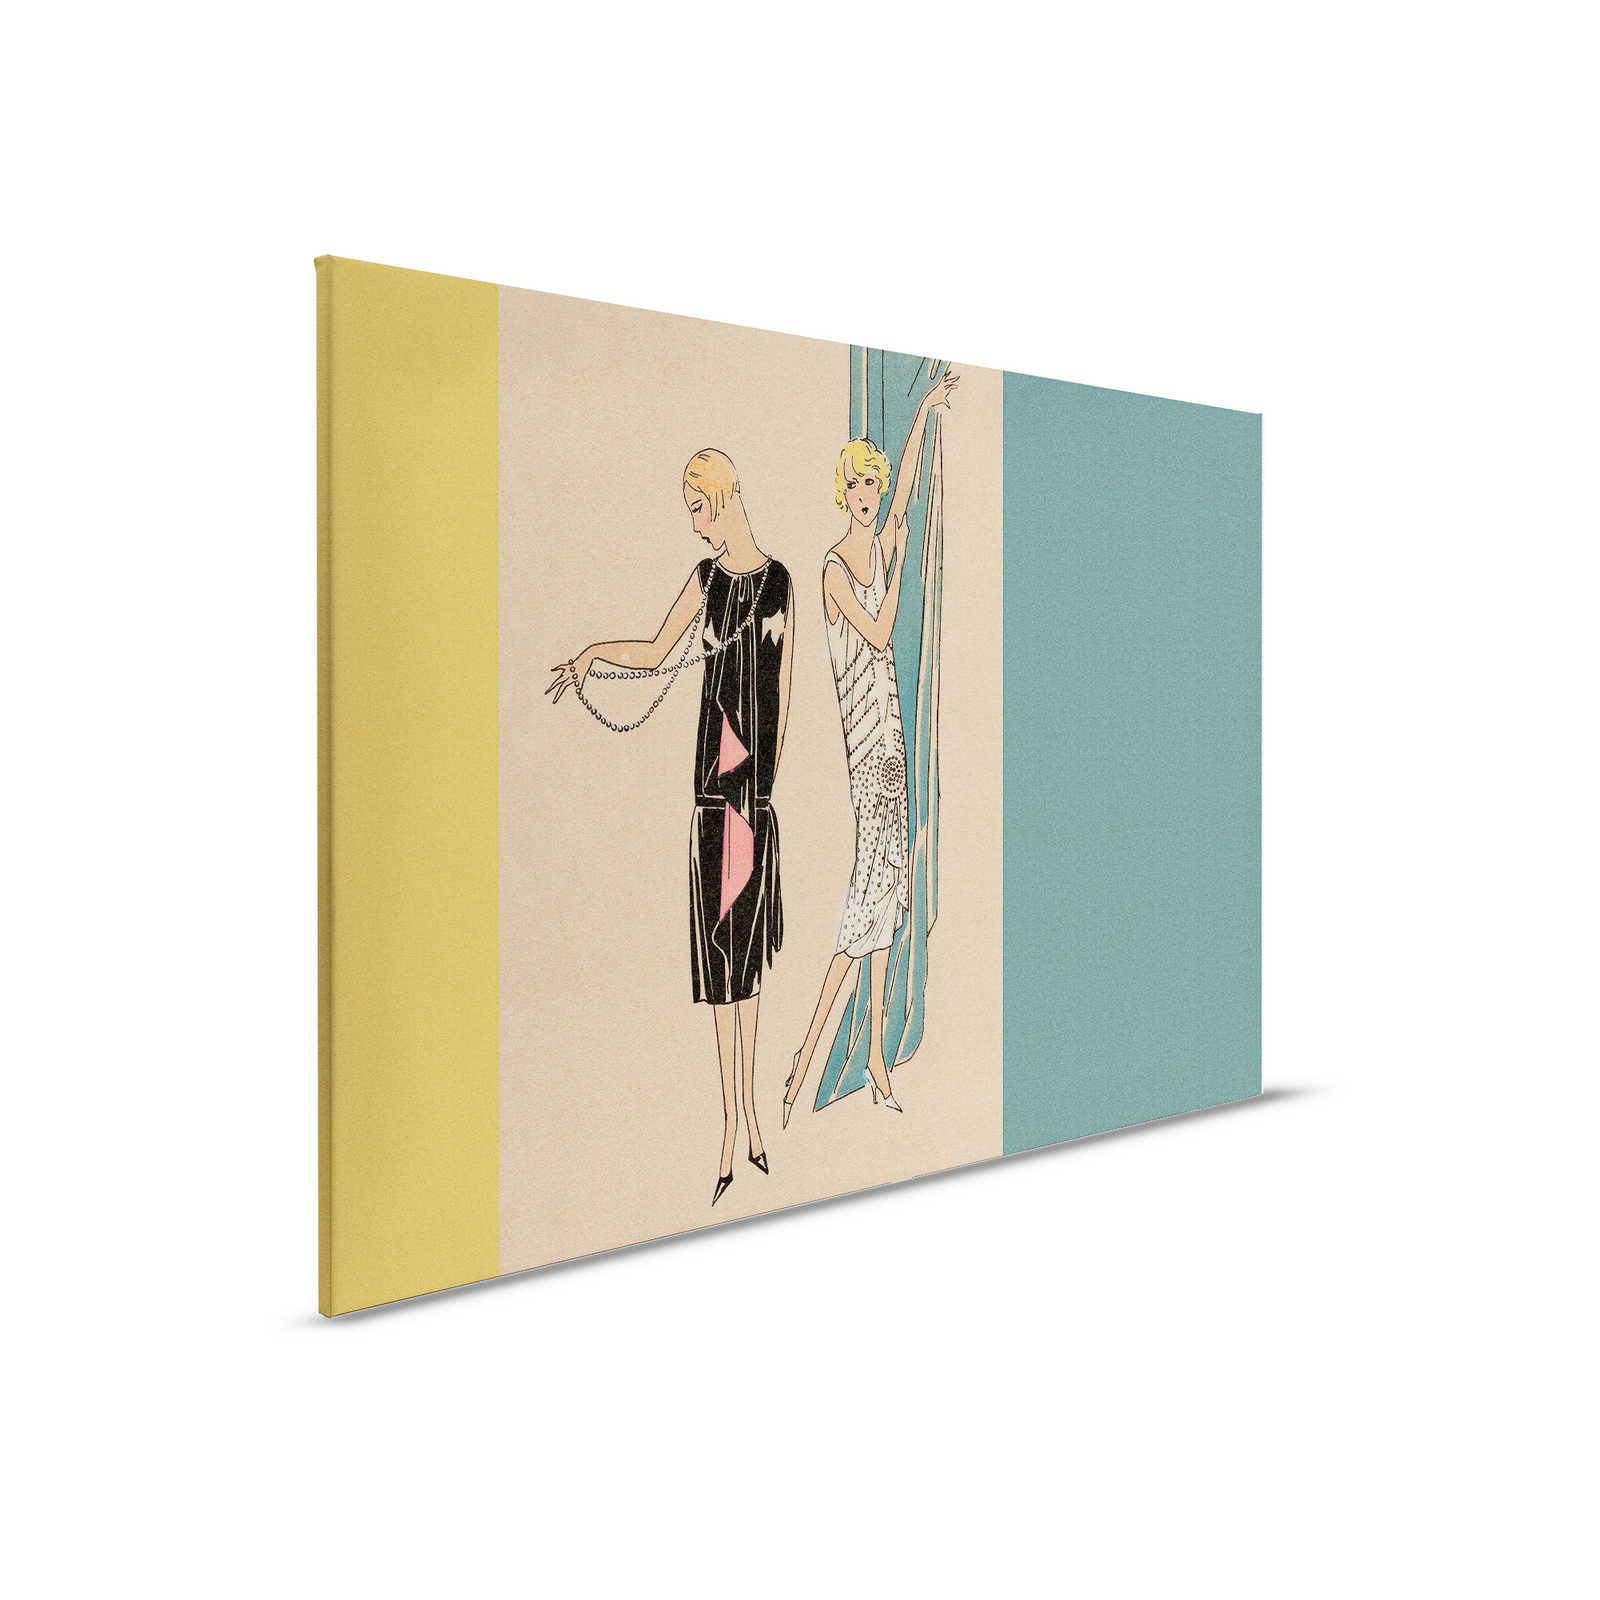 Parisienne 2 - Quadro su tela in stile retrò anni '20 in giallo e petrolio - 0,90 m x 0,60 m
